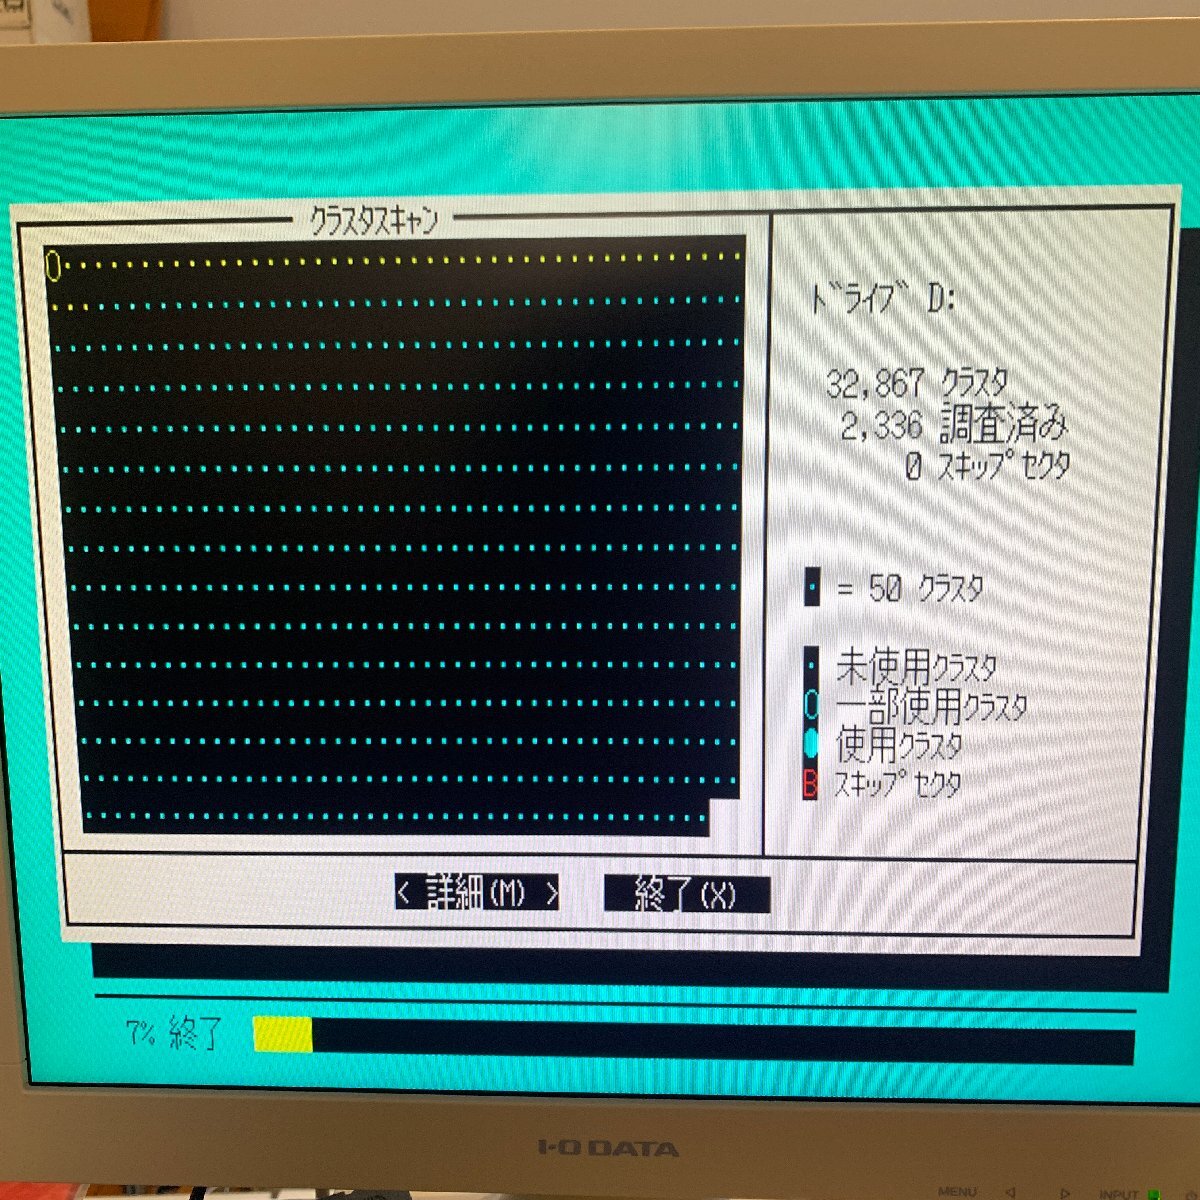 K669 Western цифровой Caviar 1270 WDAC1270 IDE подключение 270MB накопитель на жёстком диске рабочее состояние подтверждено 